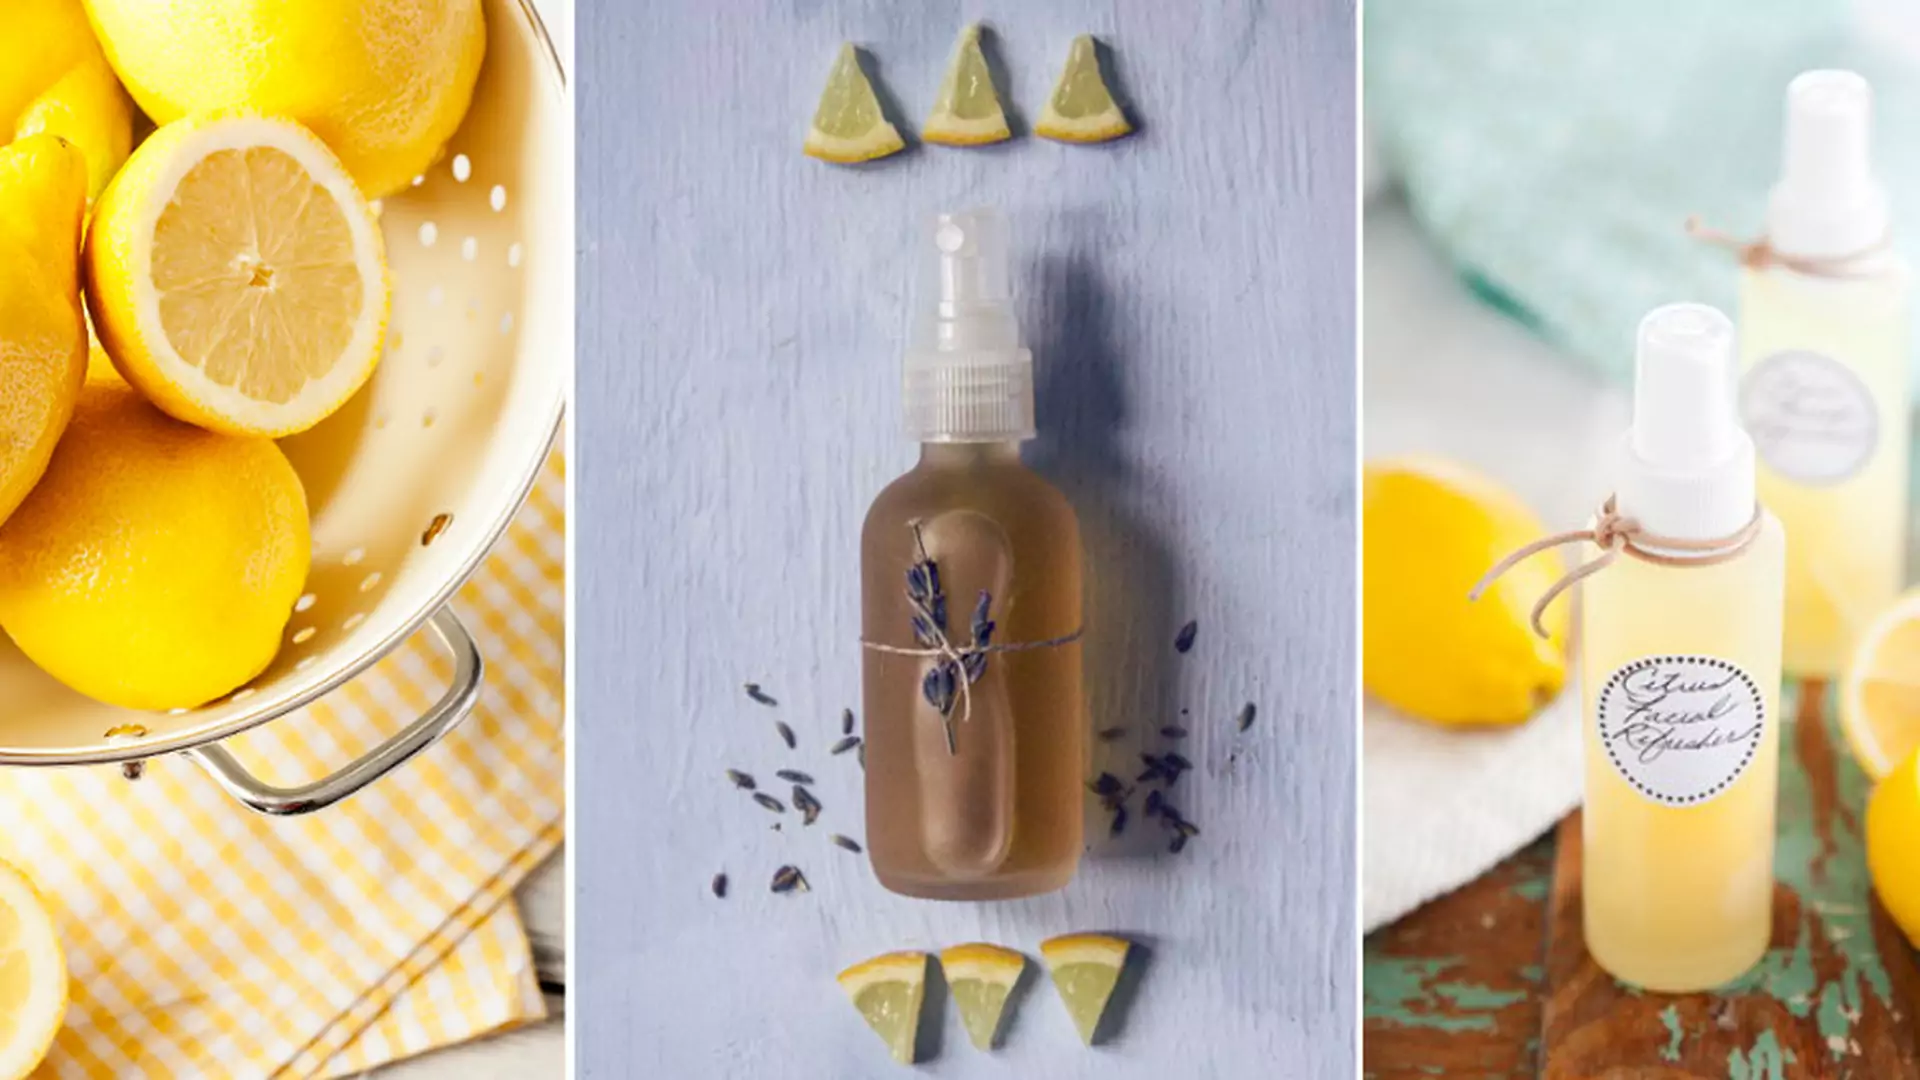 Rozjaśniający tonik z cytryny - przepis na kosmetyk domowej roboty (prawie za darmo)